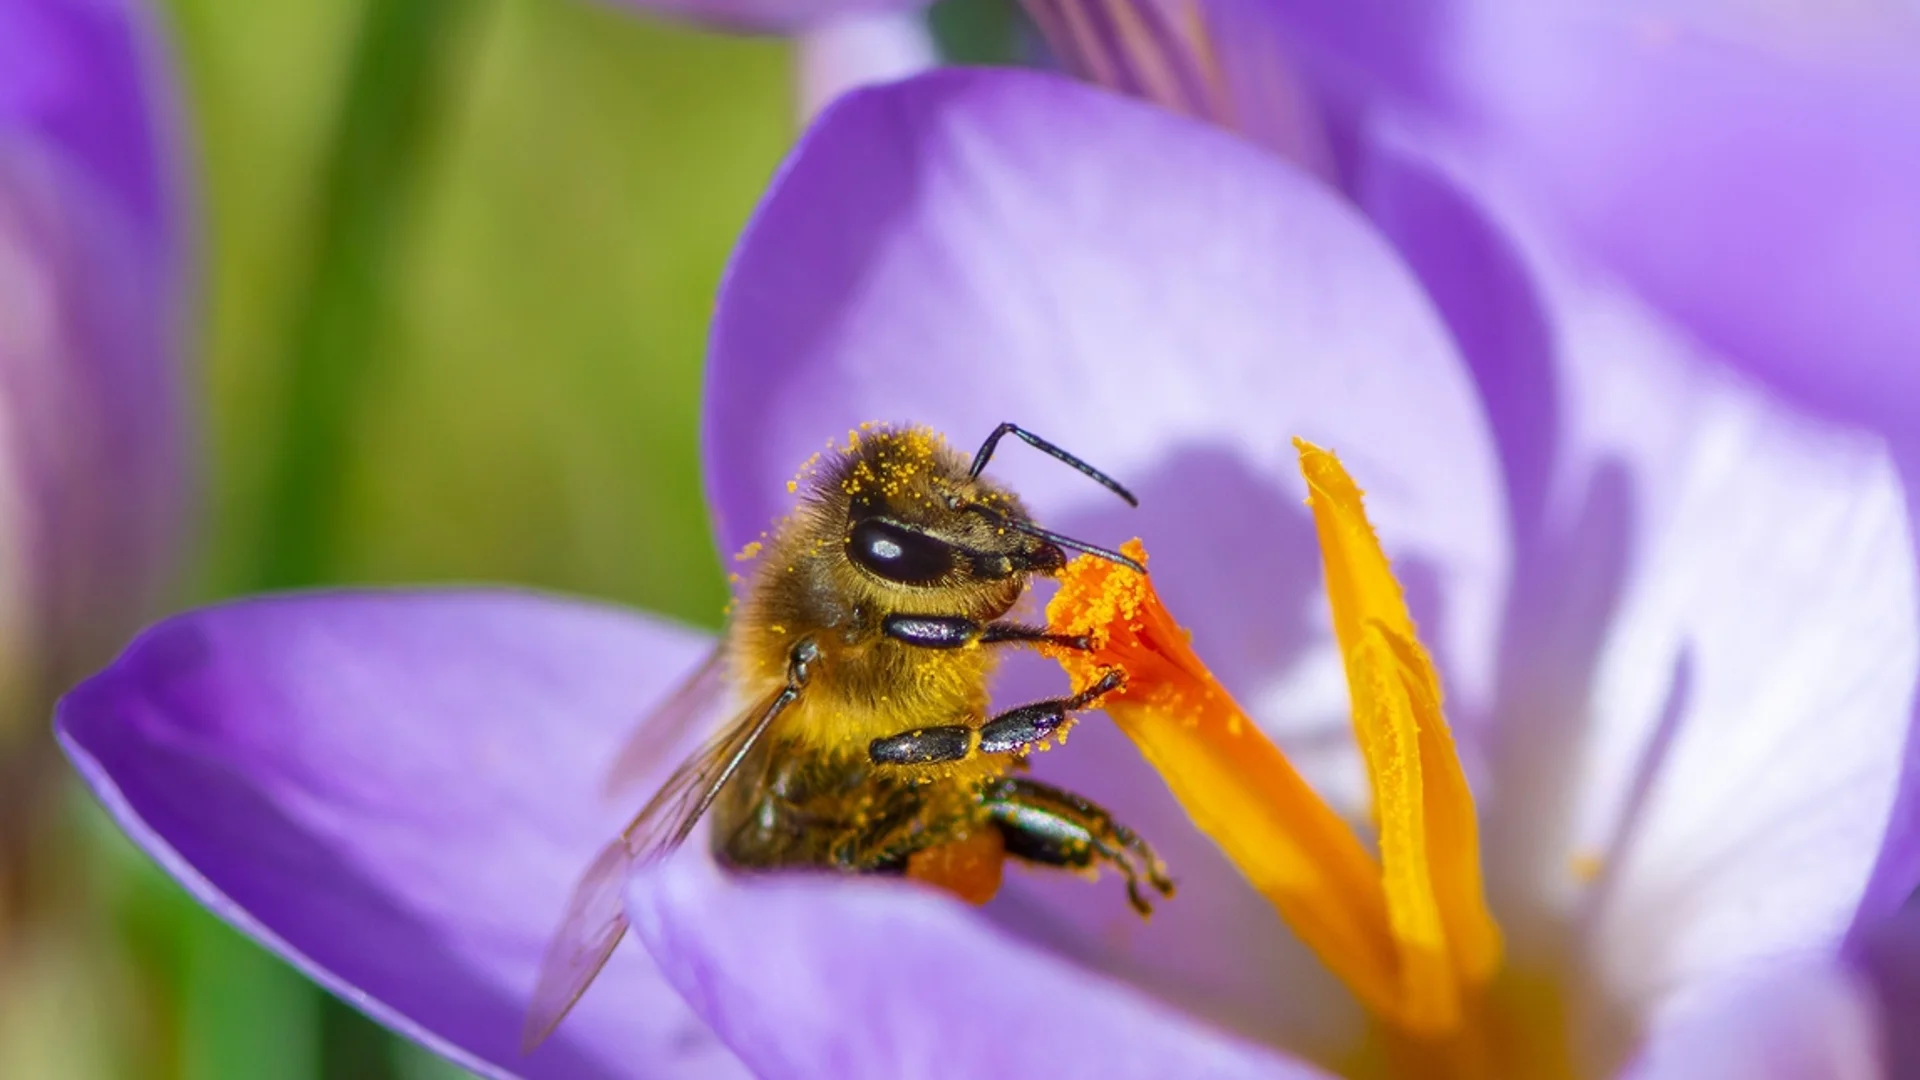 Цветя, които ще привлекат пчелите във вашата градина